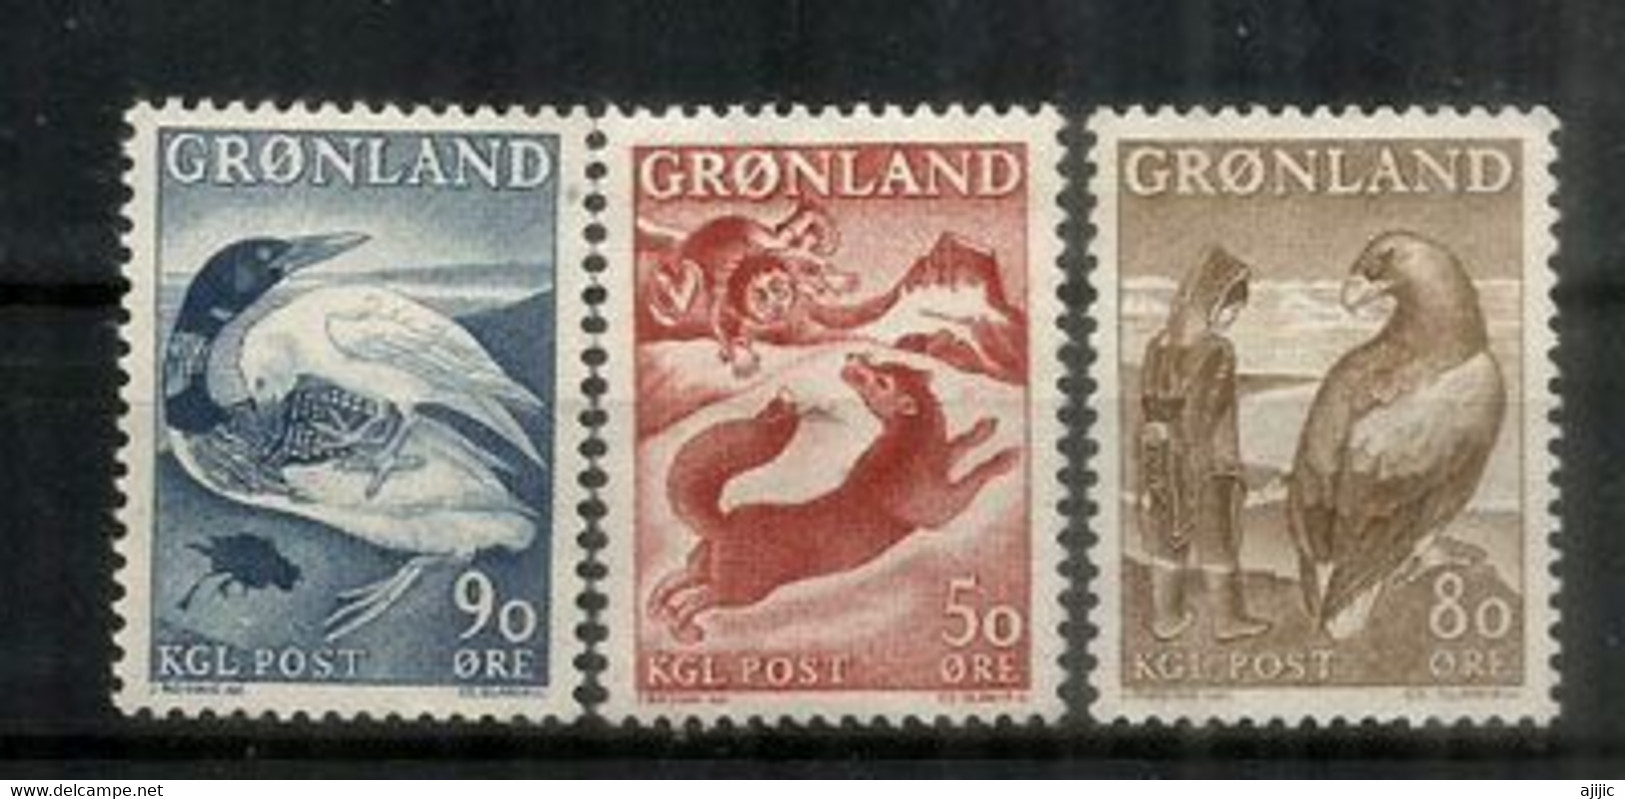 Faune Du Groenland: Renard Arctique,le Plongeon Arctique & L'Aigle Royal. 3 Timbres Neufs ** Du Groenland , Année 1966 - Arctic Tierwelt